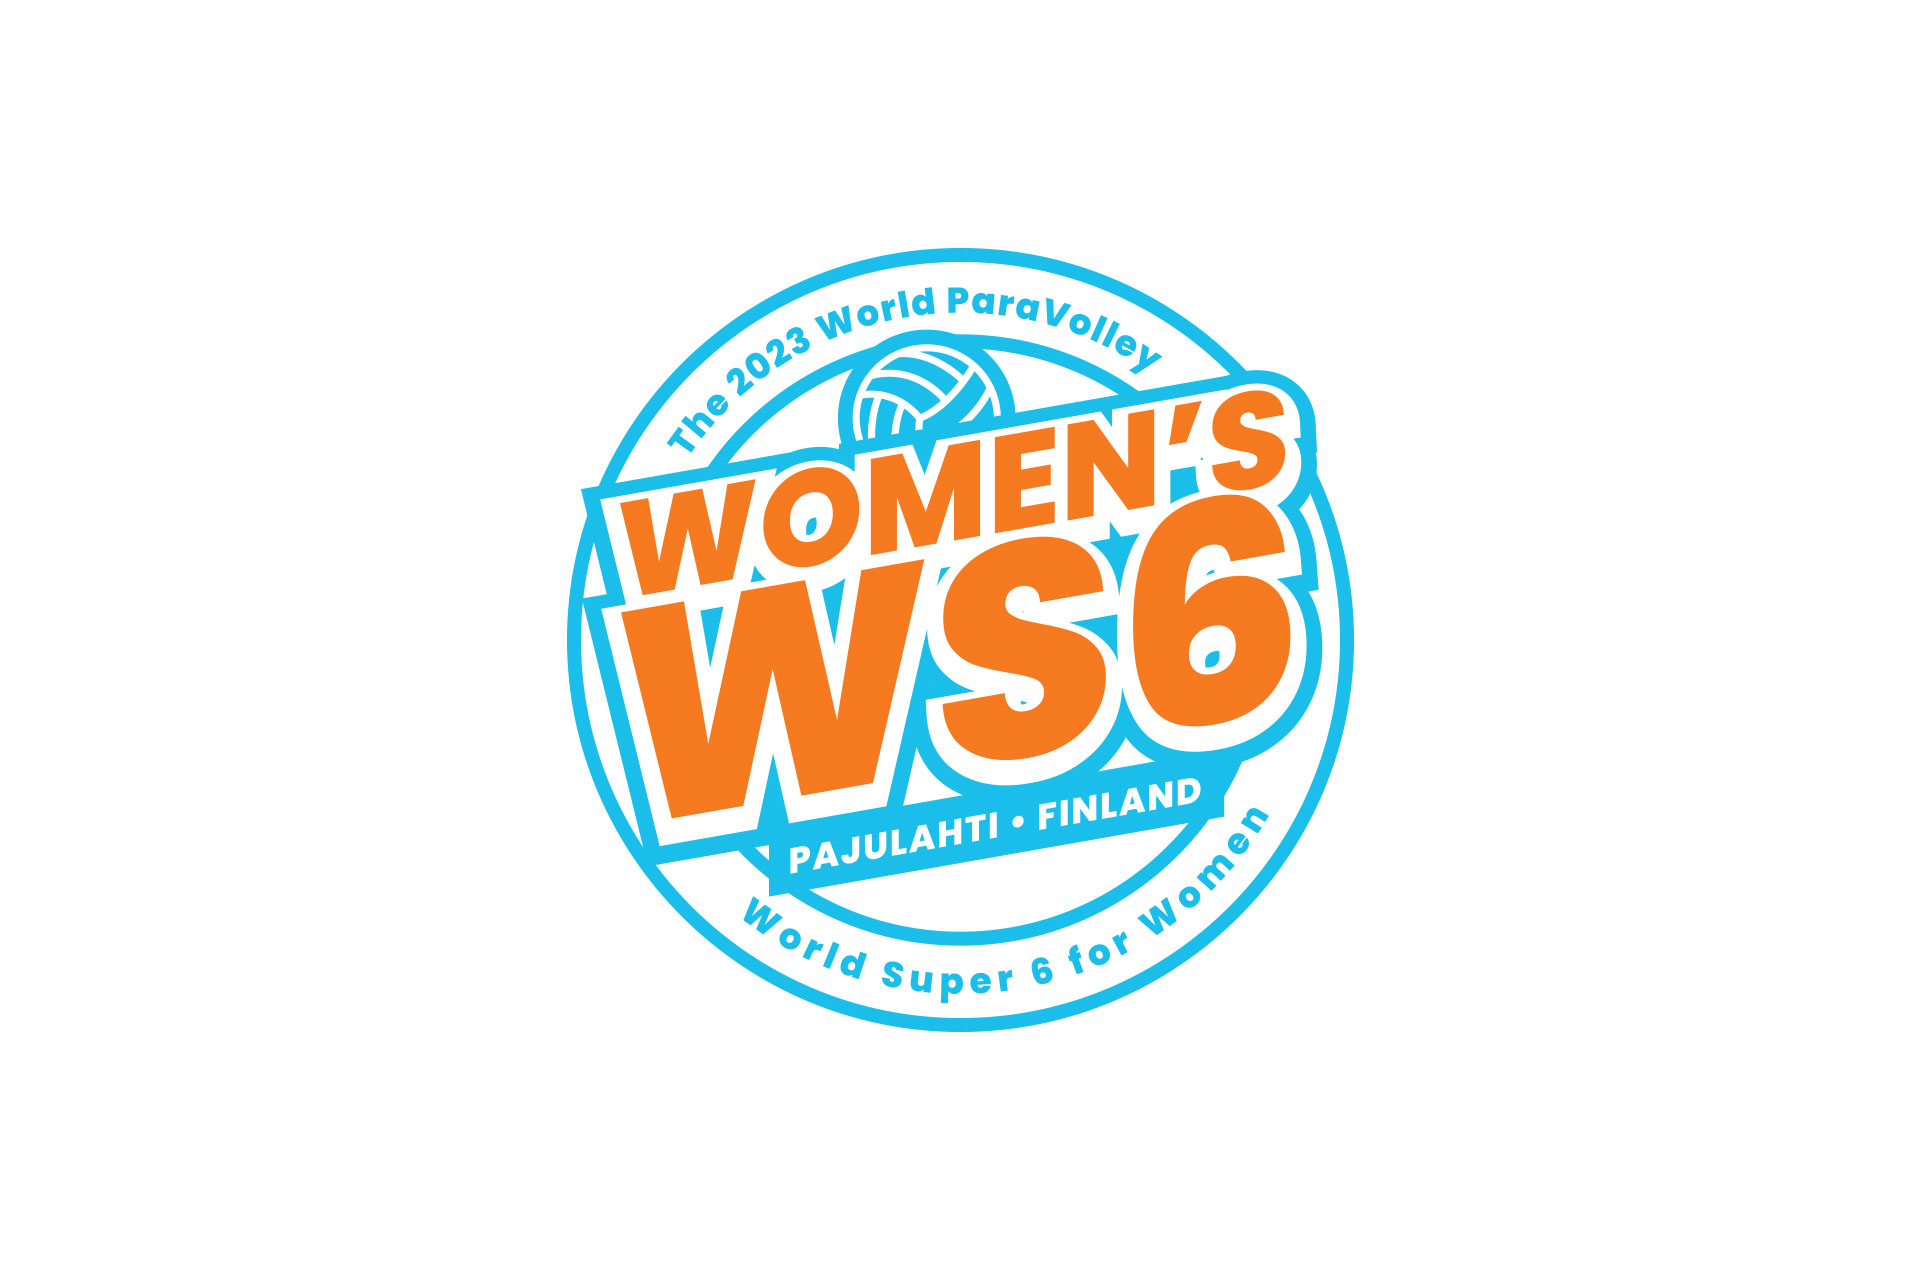 WS6 logo